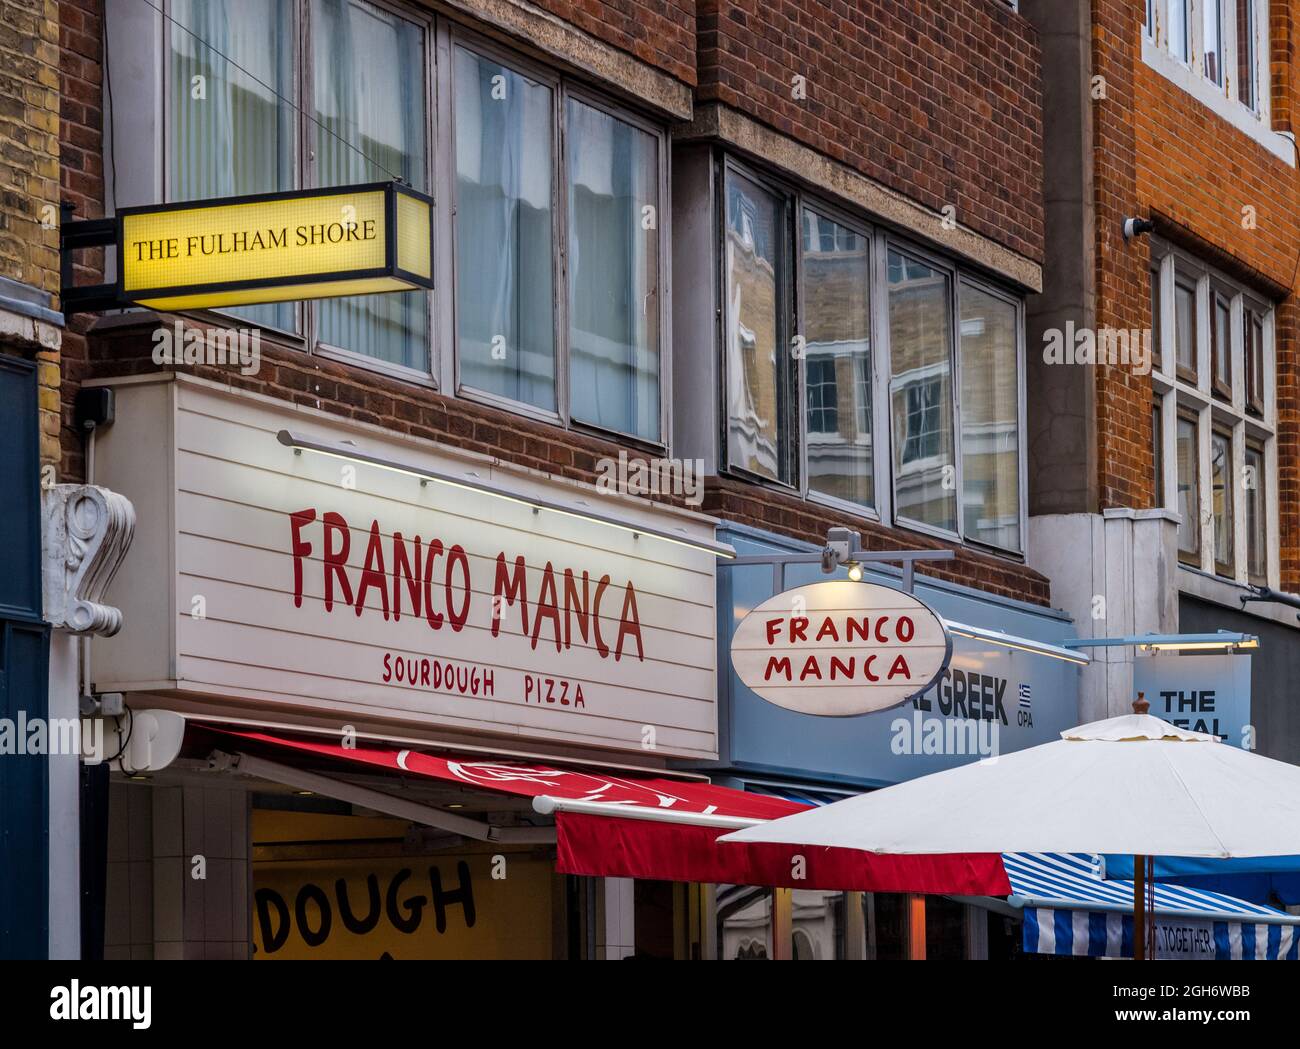 Il Fulham Shore PLC su Berwick Street, Soho, Londra. La Fulham Shore è una società di ristoranti che possiede Franco Banca e le catene di ristoranti Real Greek. Foto Stock